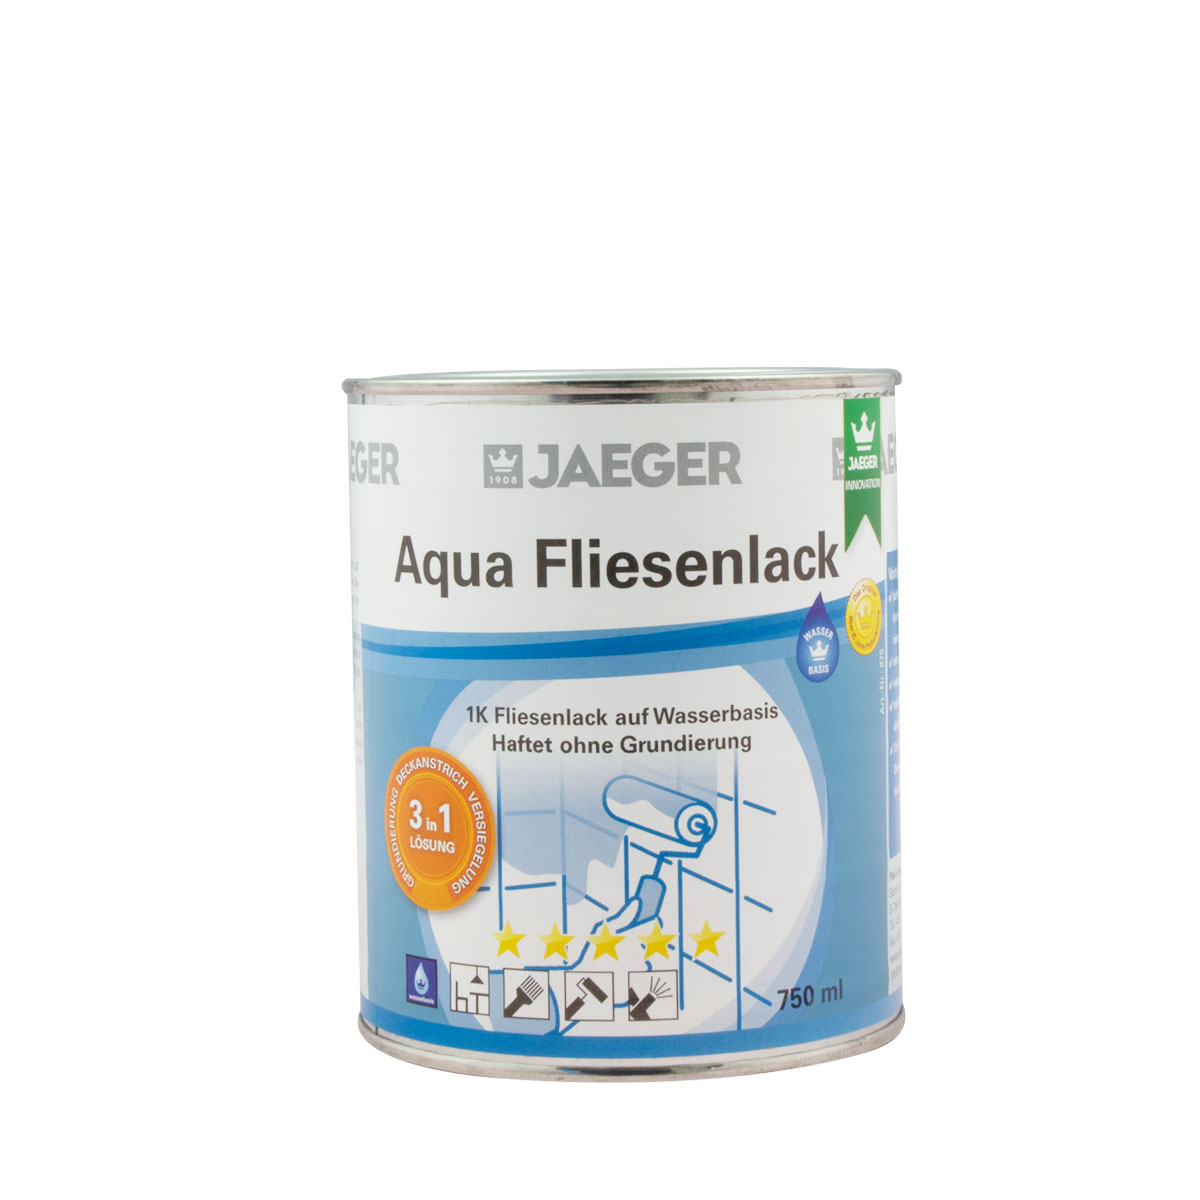 Jaeger Aqua Fliesenlack 875 perla(mittelgrau) 750ml, 3 in 1 System